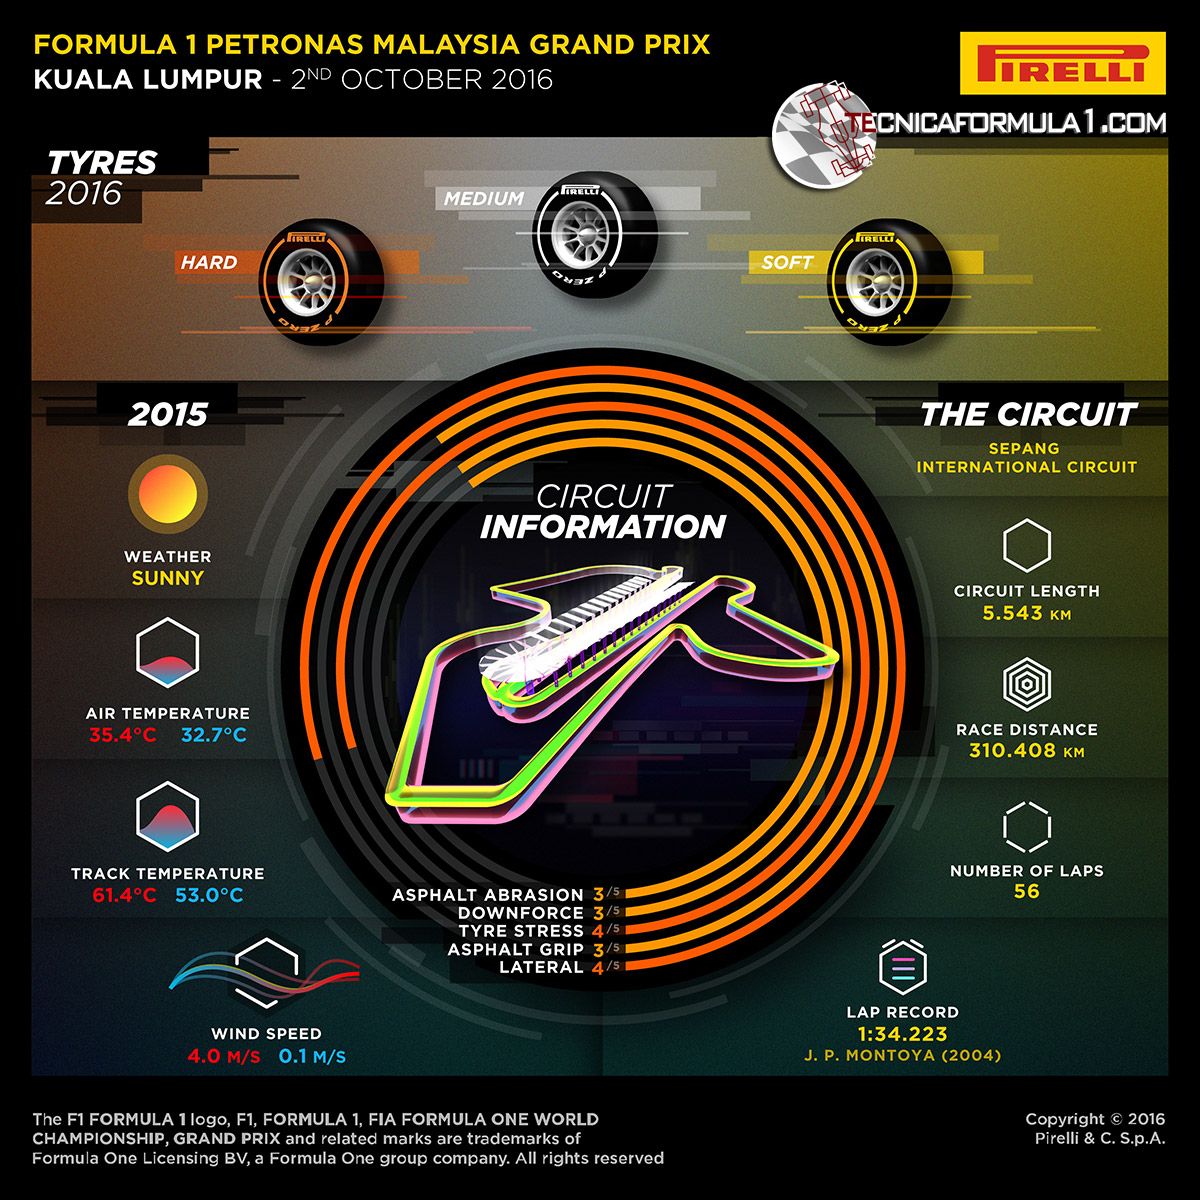 La preview della Pirelli della gara di Sepang (foto da: tecnicaformula1.com)